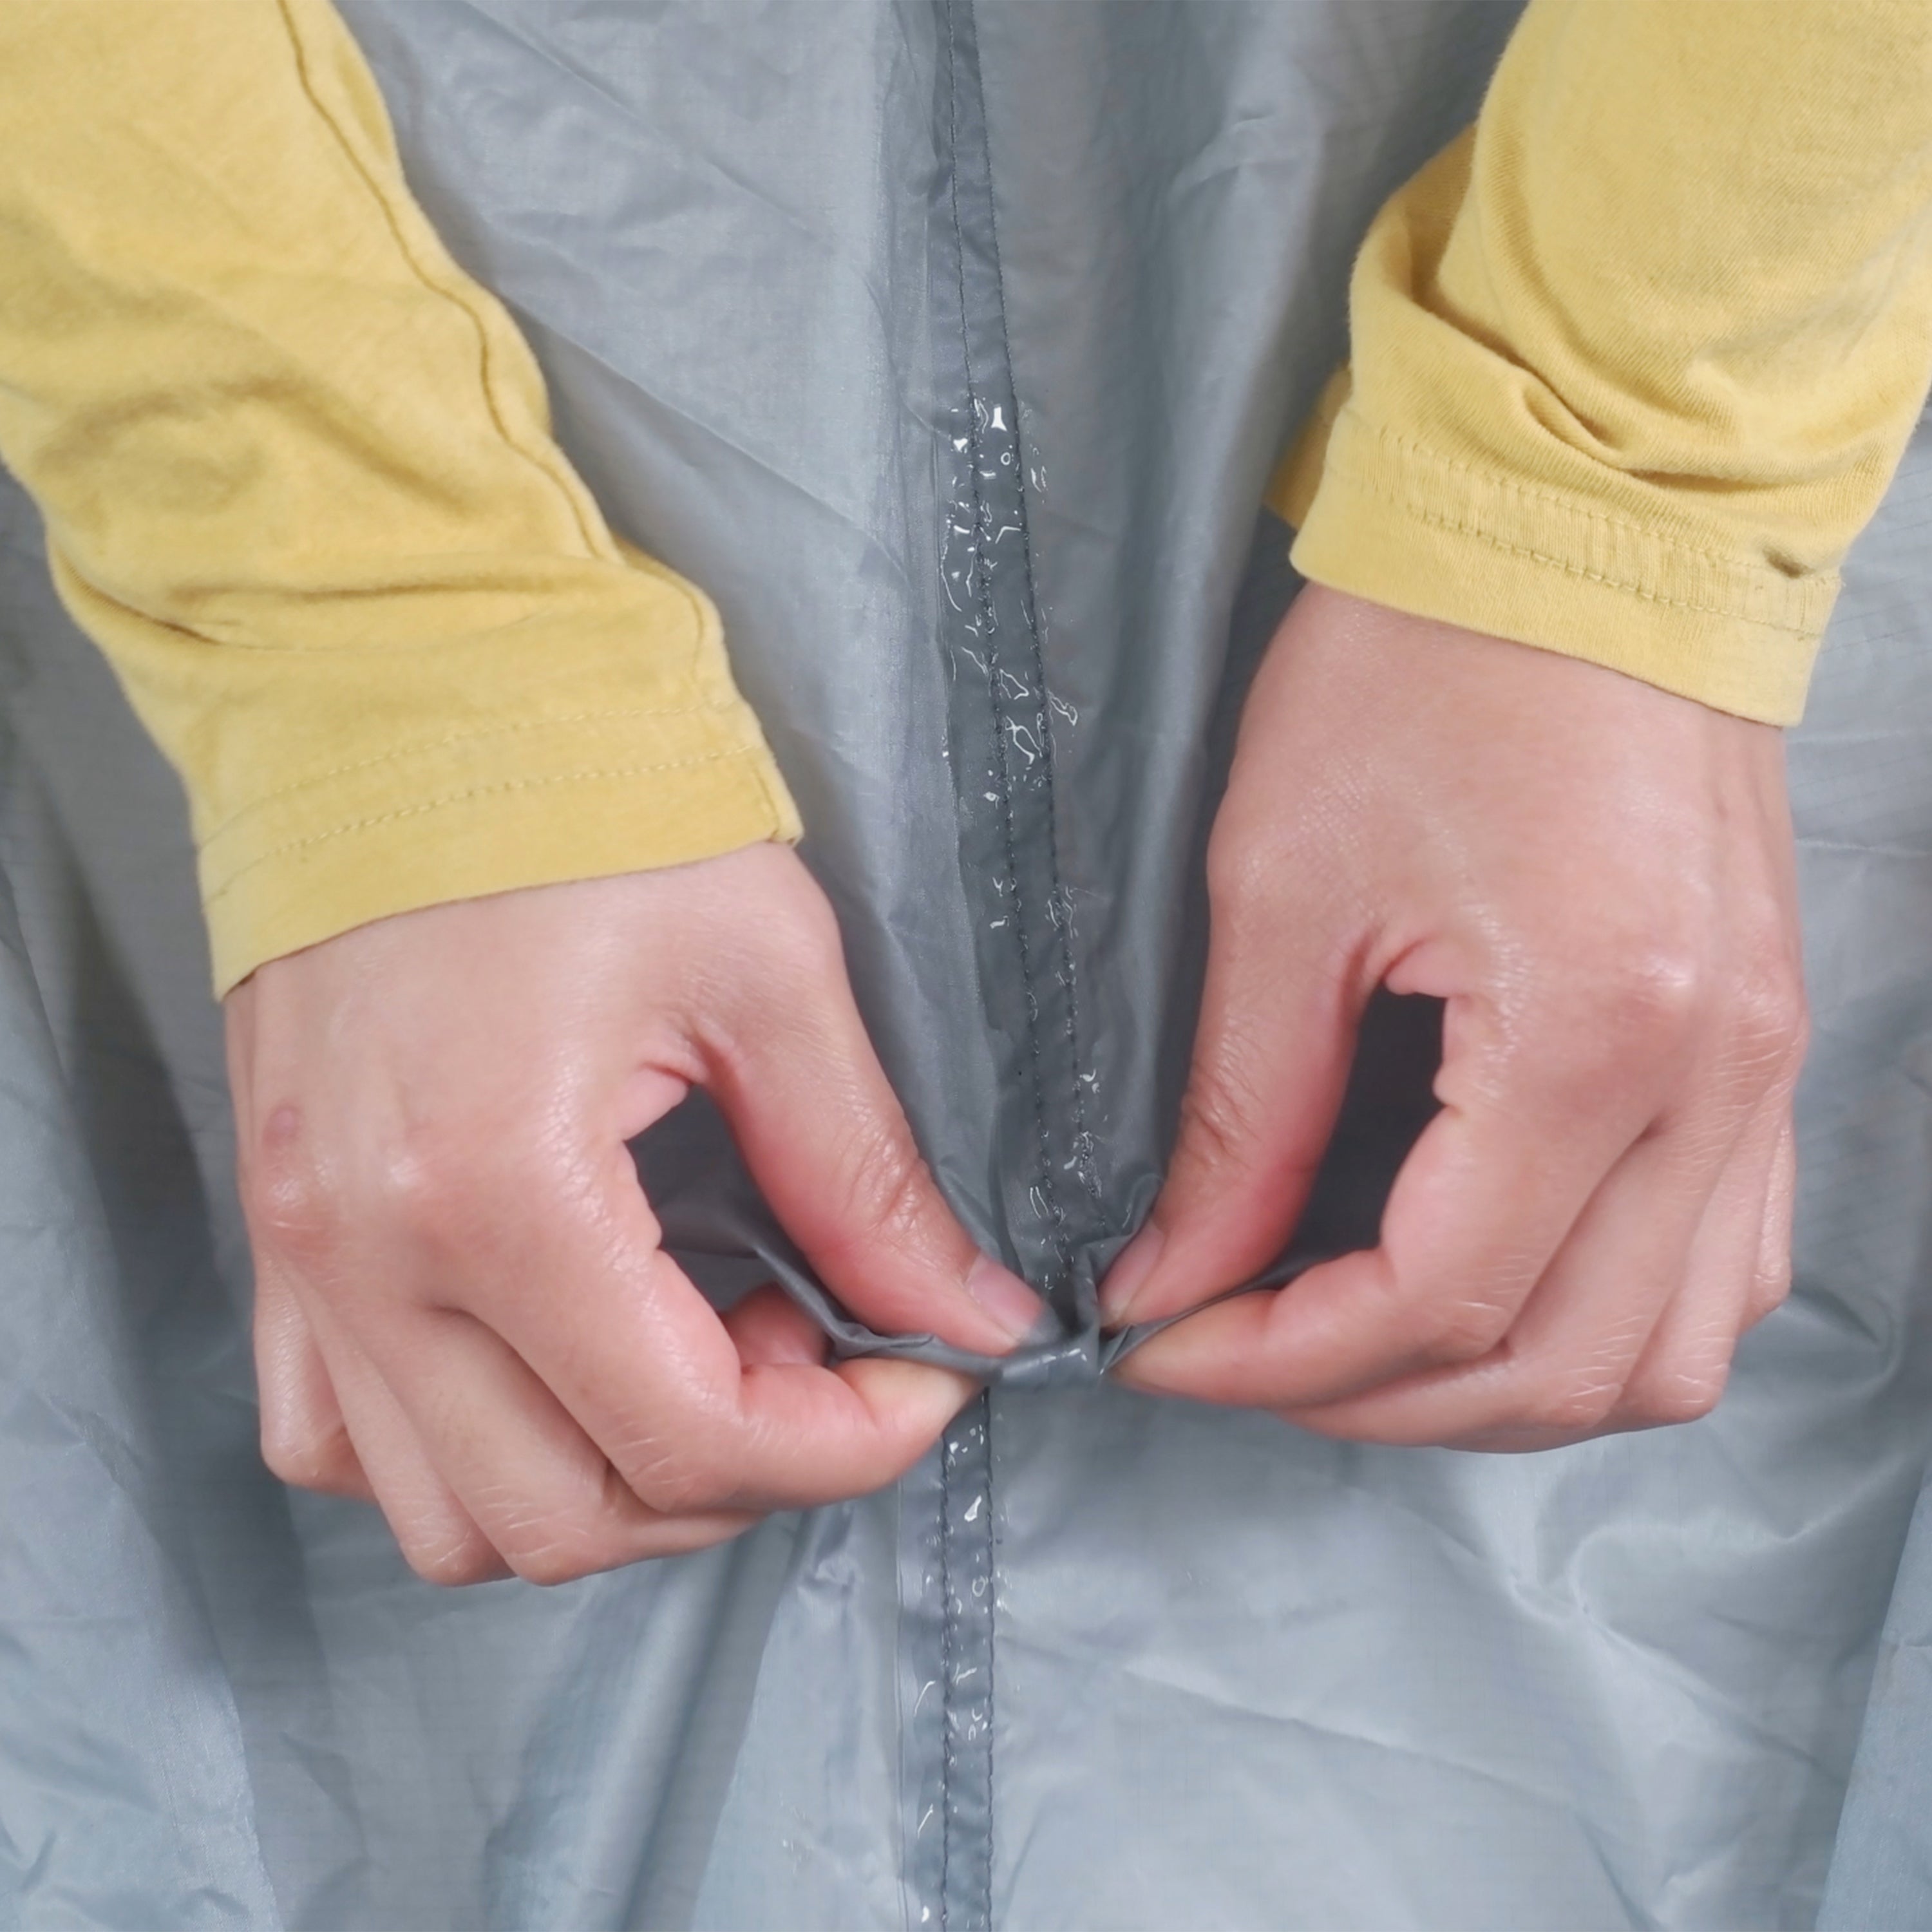 Seam Grip SIL Silicone Tent Sealant de GearAid - Scellant pour tissu  silnylon